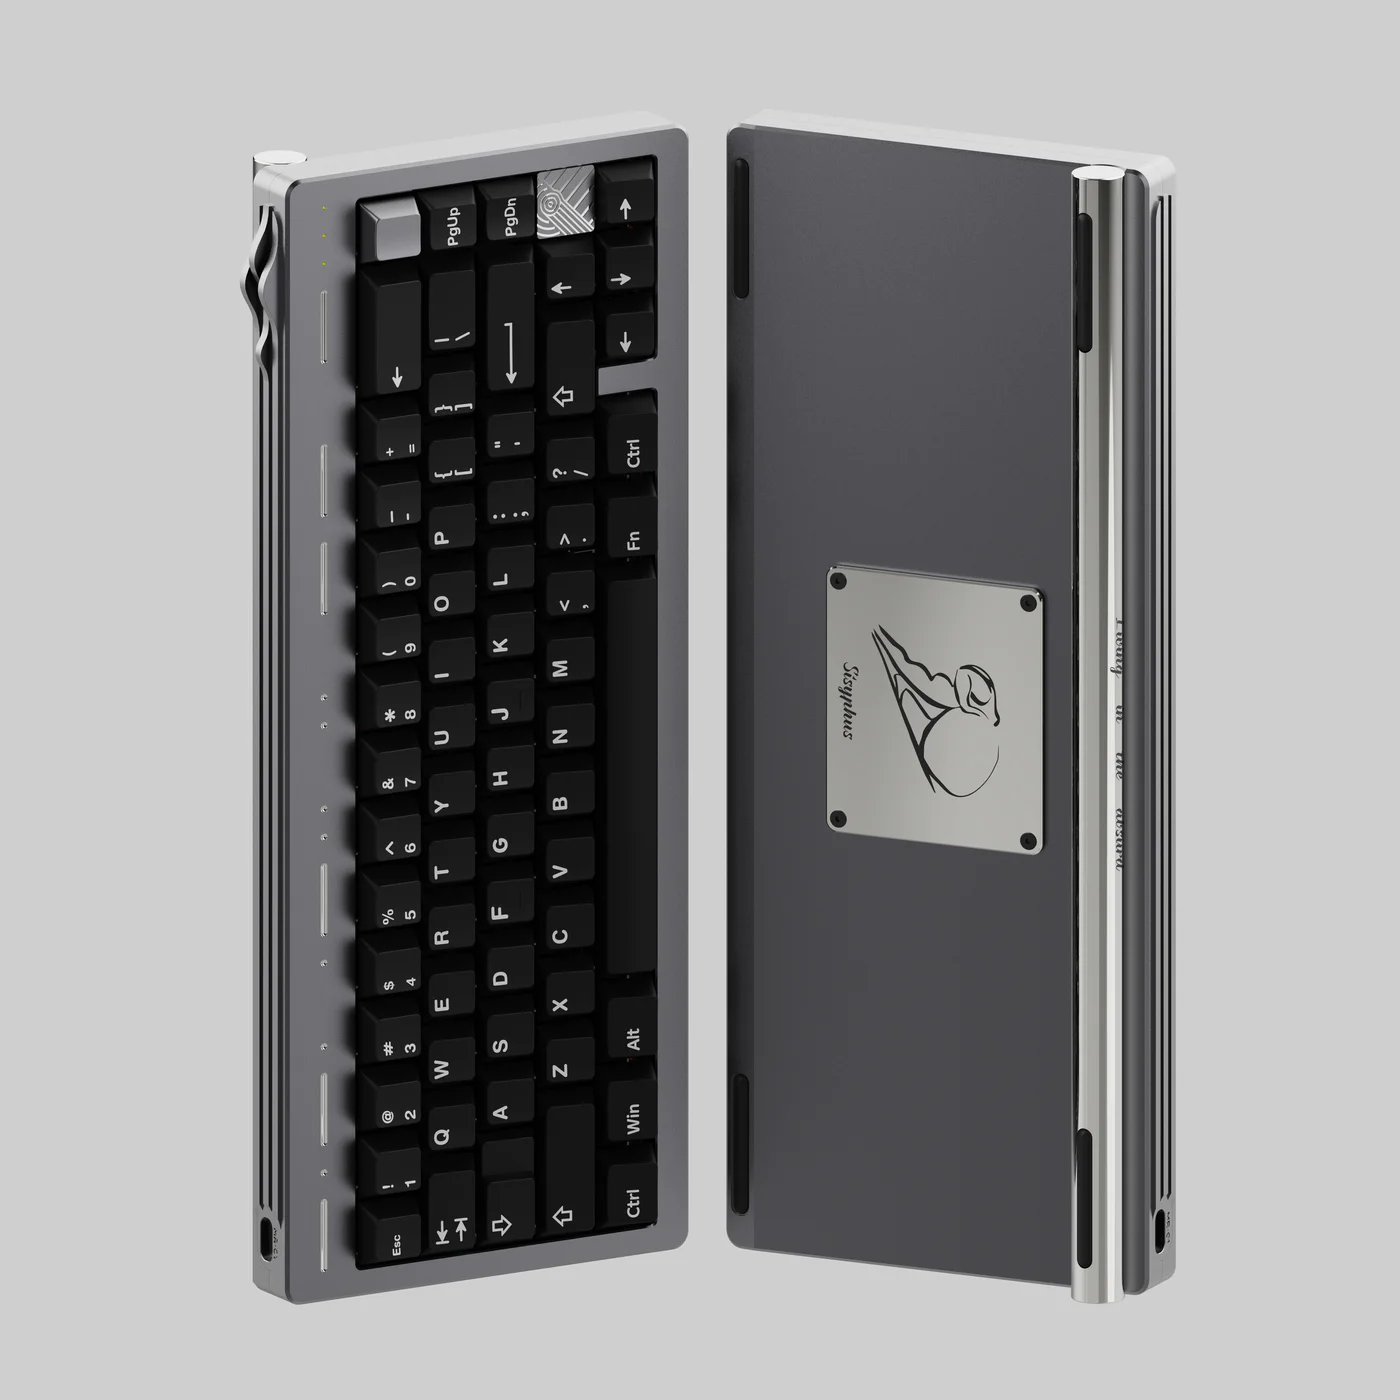 Sisyphus65 Keyboard Kit